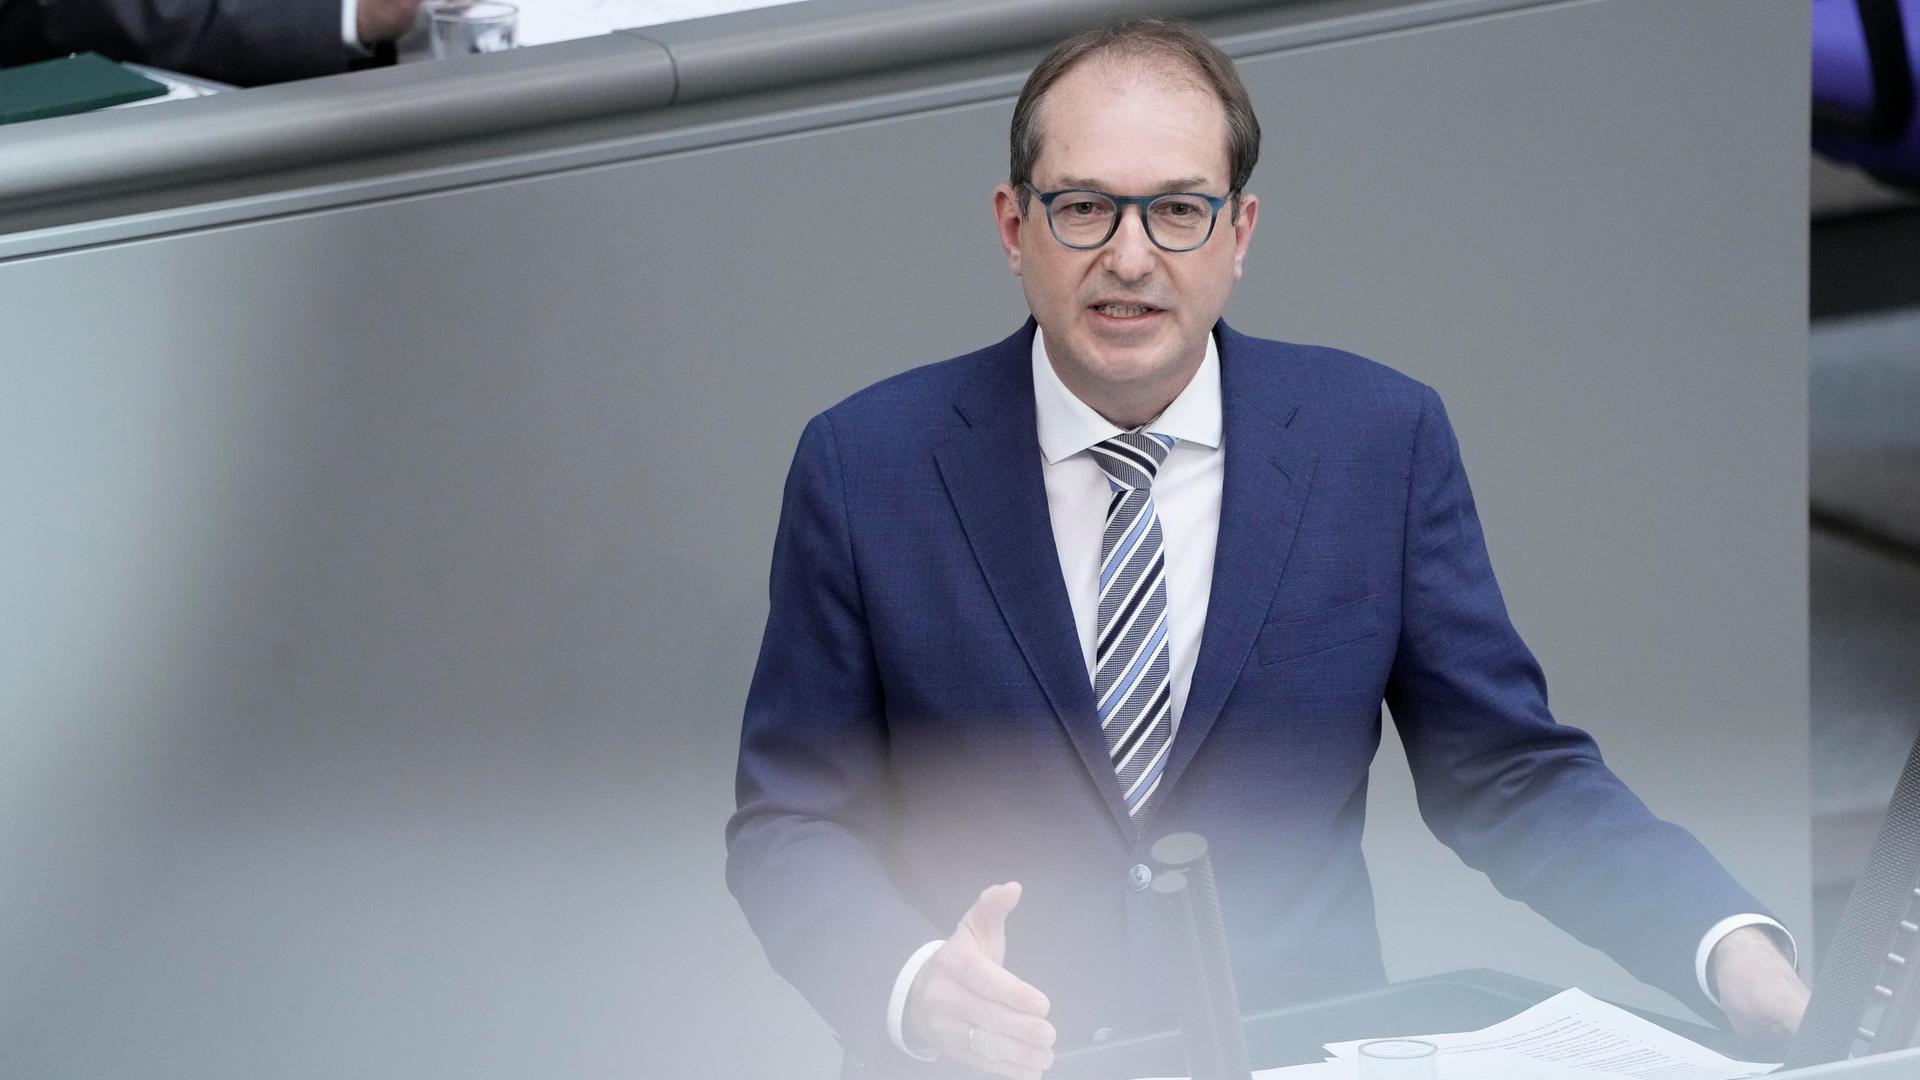 Alexander Dobrindt von der Partei CDU/CSU im Portrait bei seiner Rede zur Debatte Aenderung Art. 87a GG, Bundeswehrsondervermoegensgesetz bei der 30. Sitzung des Deutschen Bundestag in Berlin